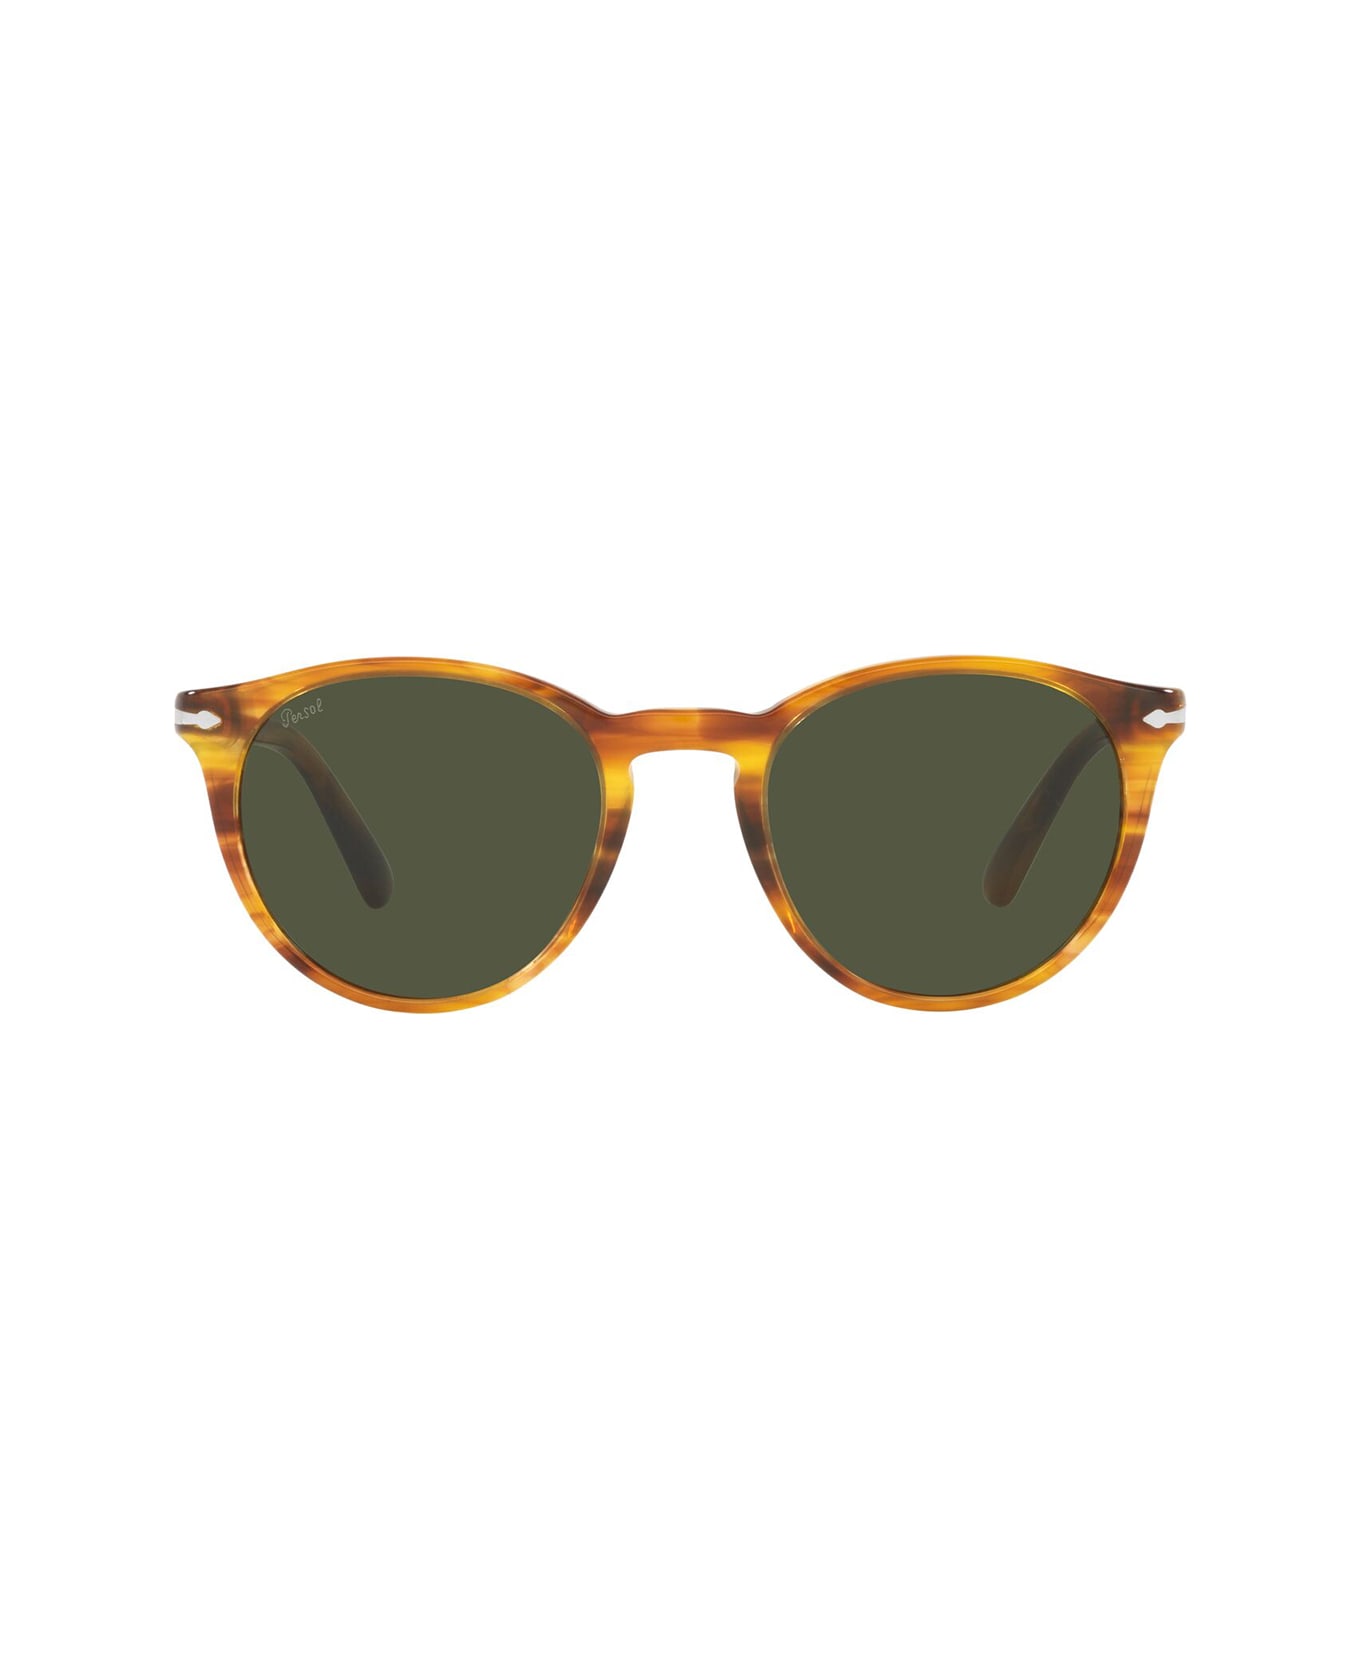 Persol Po3152s Striped Brown Sunglasses - Striped Brown